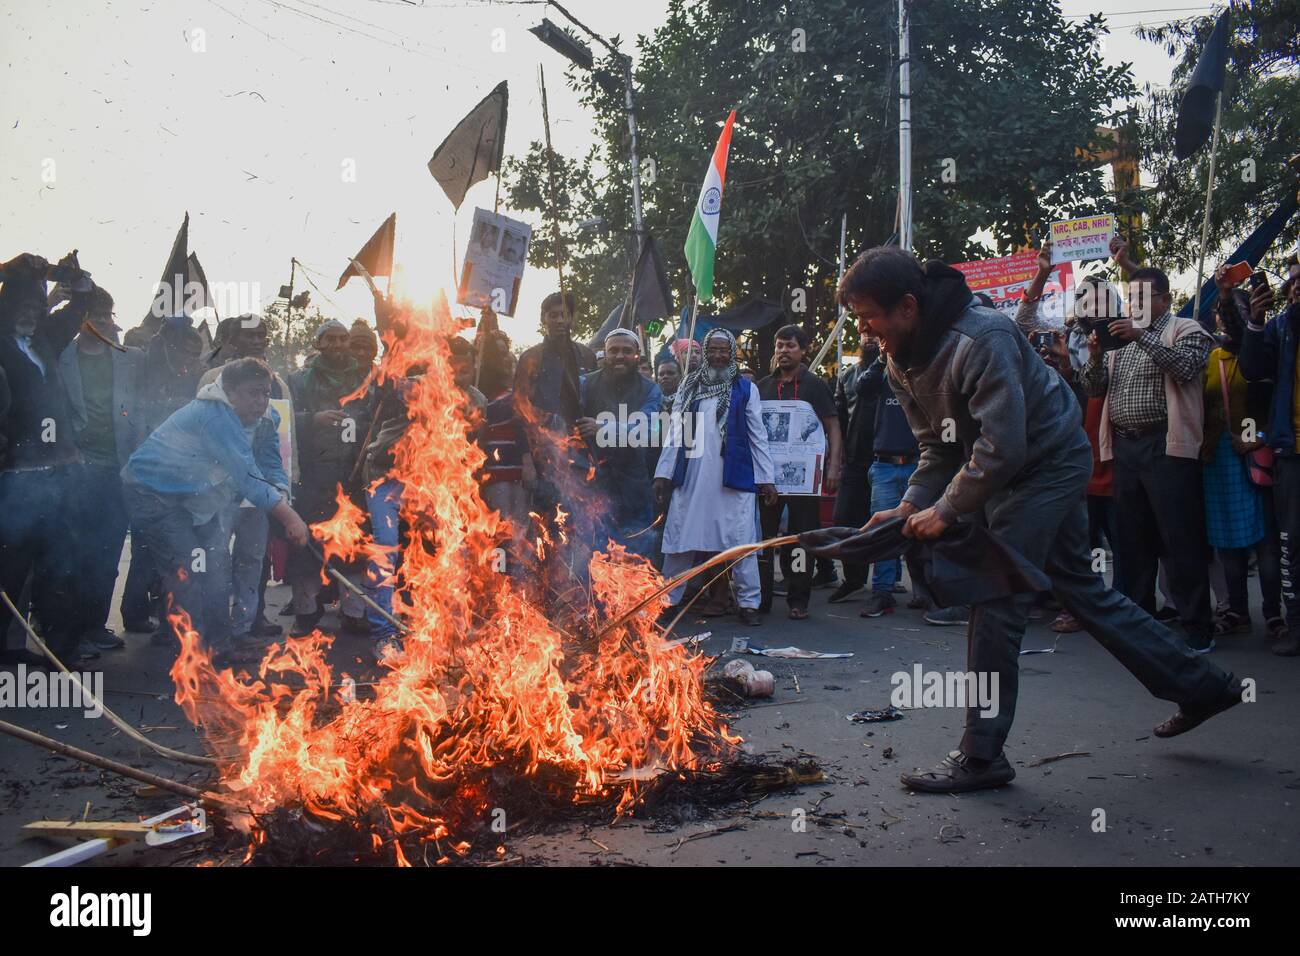 Les Militants de Suci en Inde ont crié des slogans lorsqu'ils brûlent un effigie lors d'un rassemblement de protestation contre le CNRC à Kolkata, en Inde. Banque D'Images